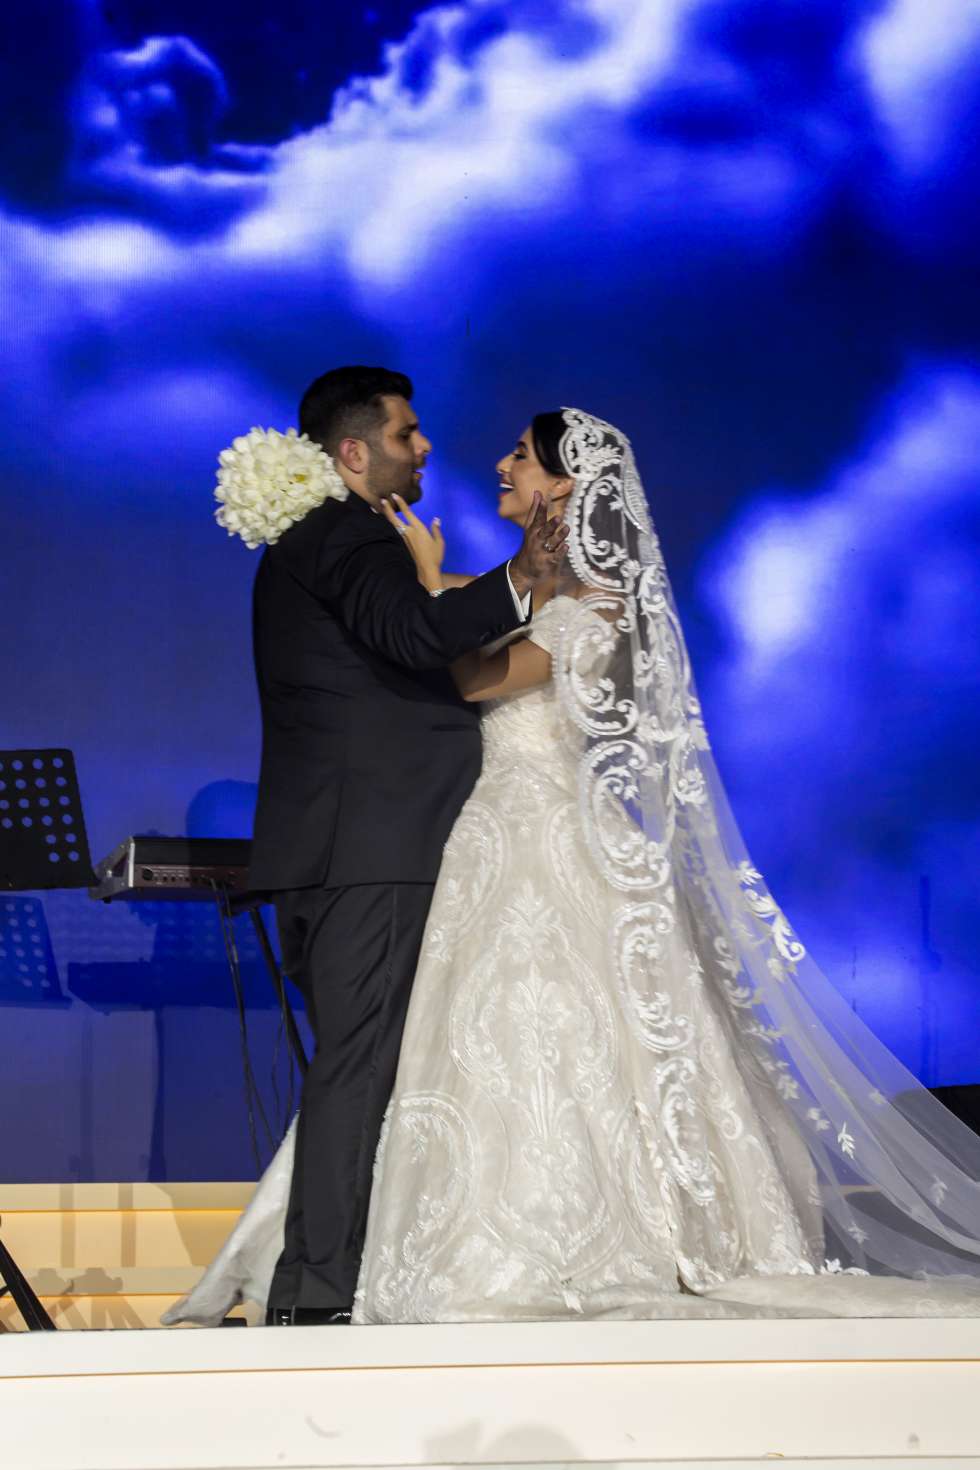 A Lake Como Wedding Theme at The Dead Sea